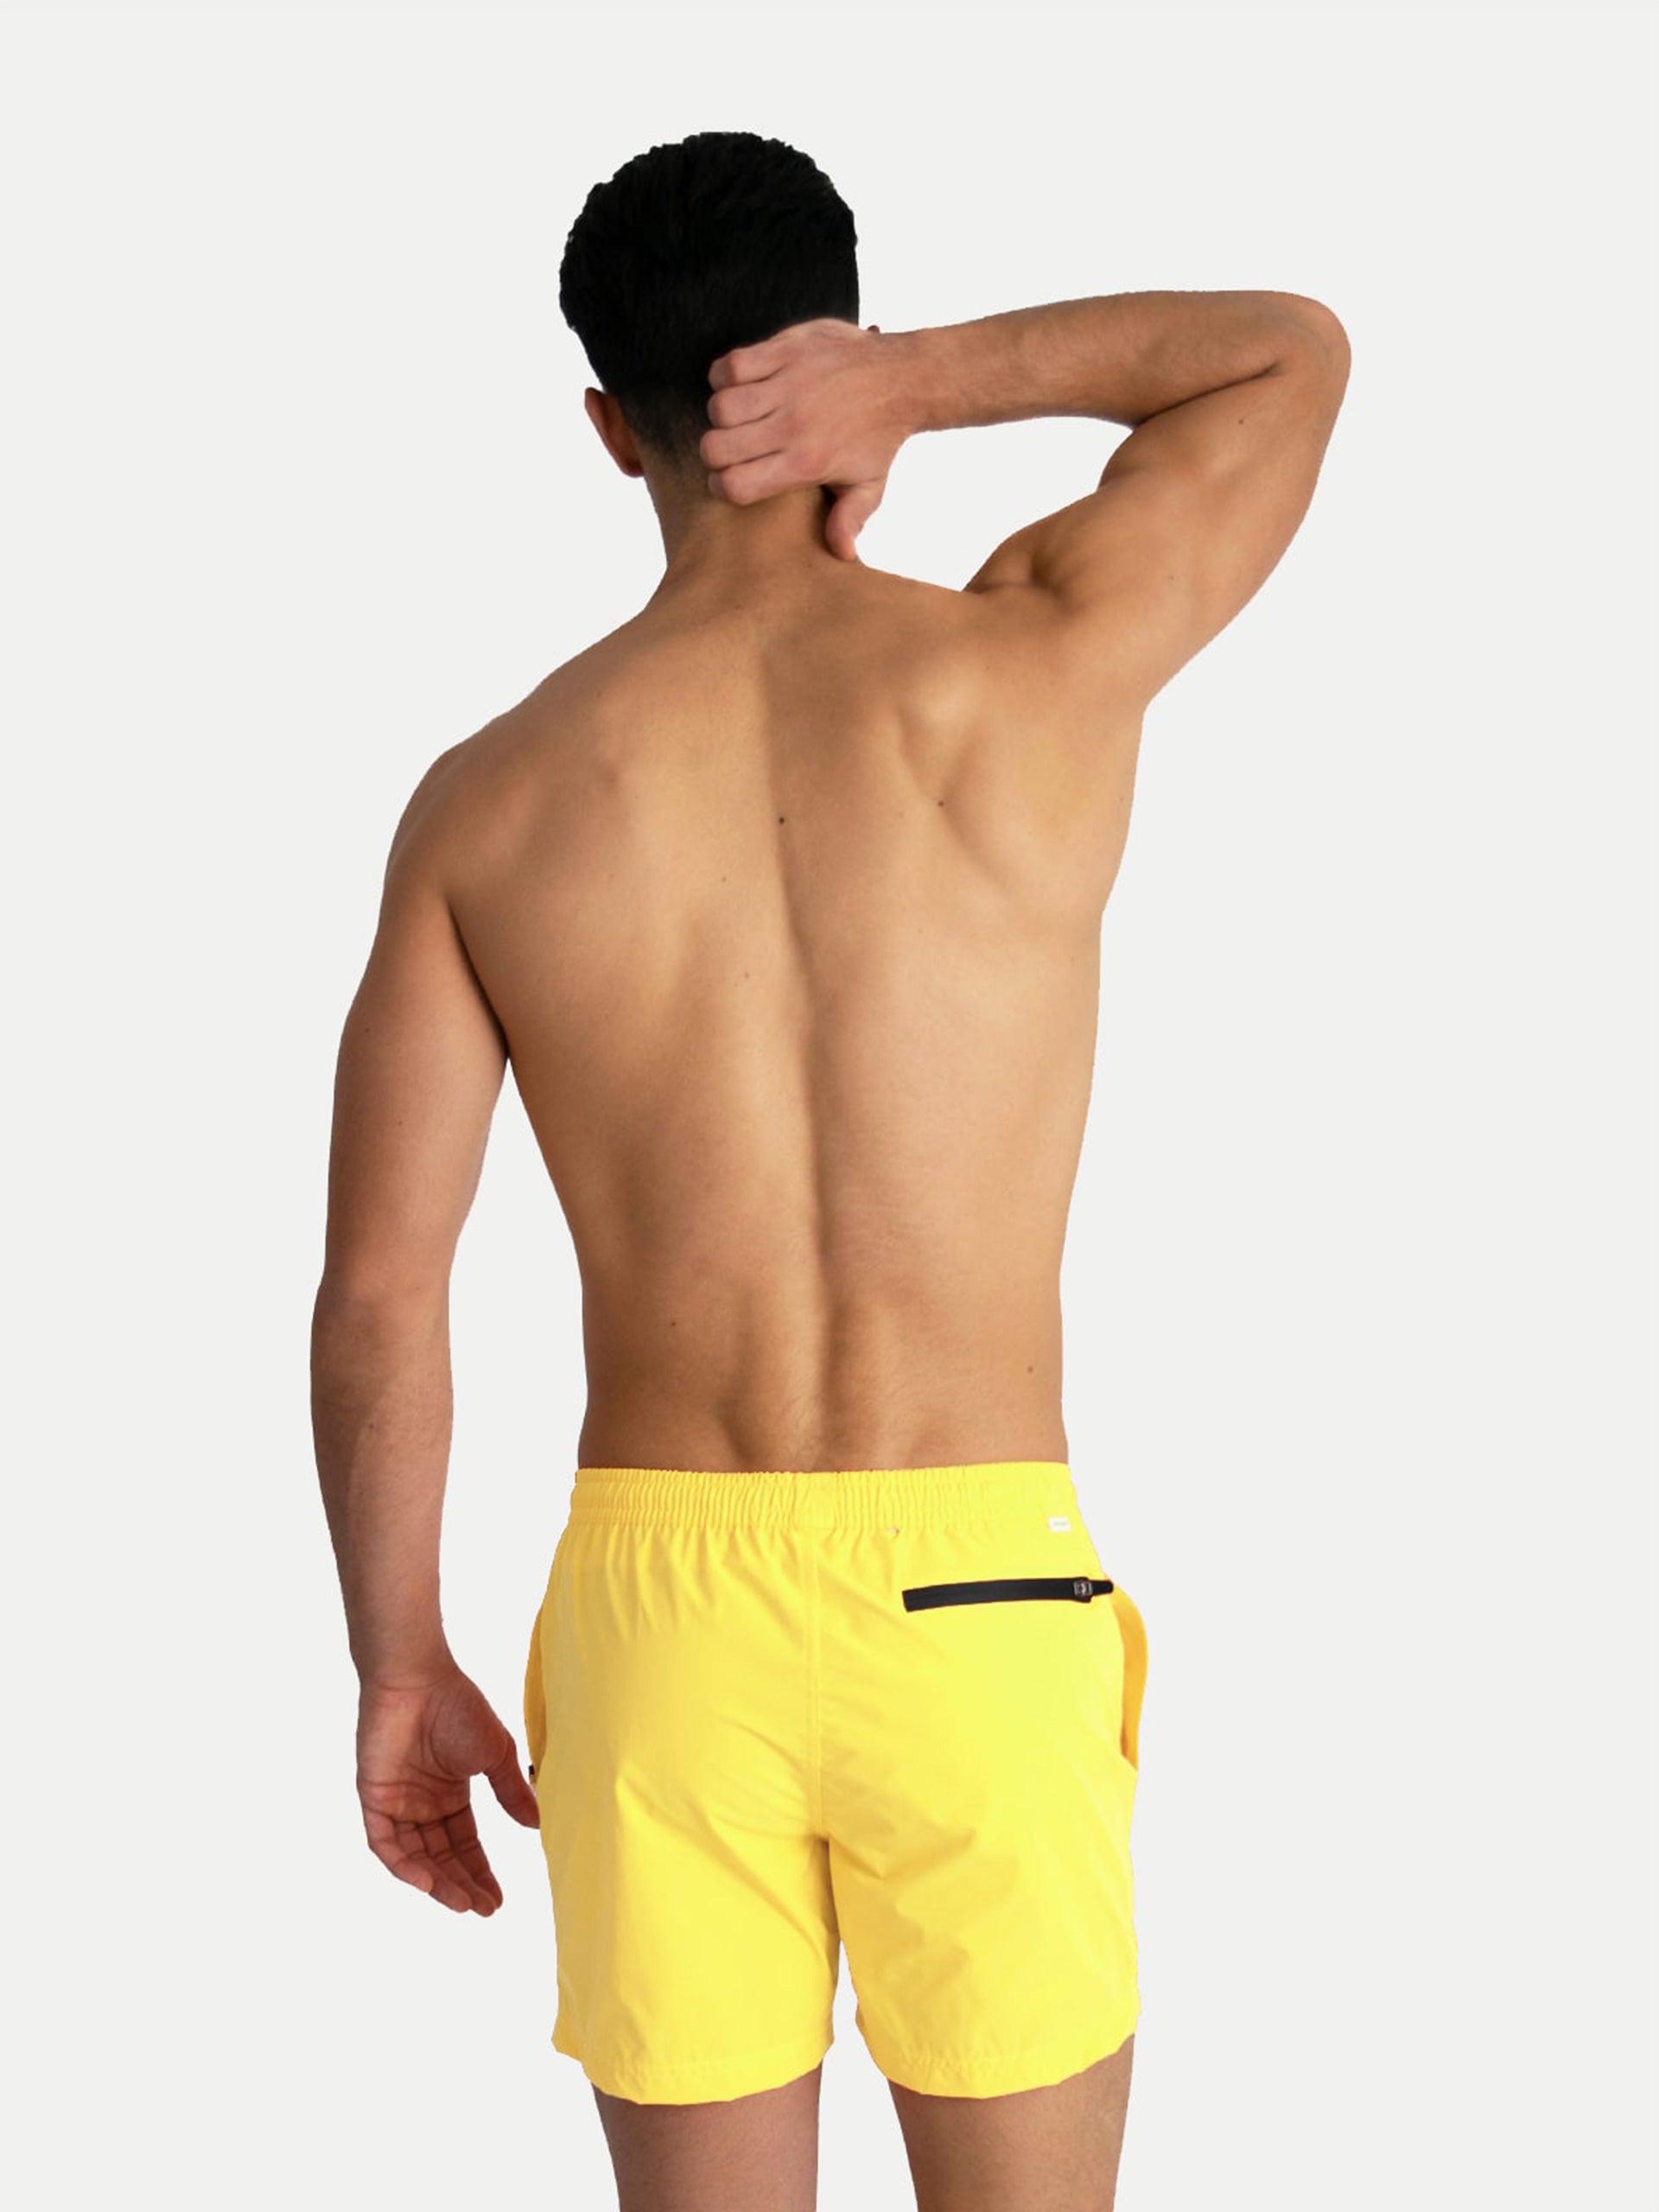 'Basic Yellow' Swim Trunks for Men by 98 Coast Av.